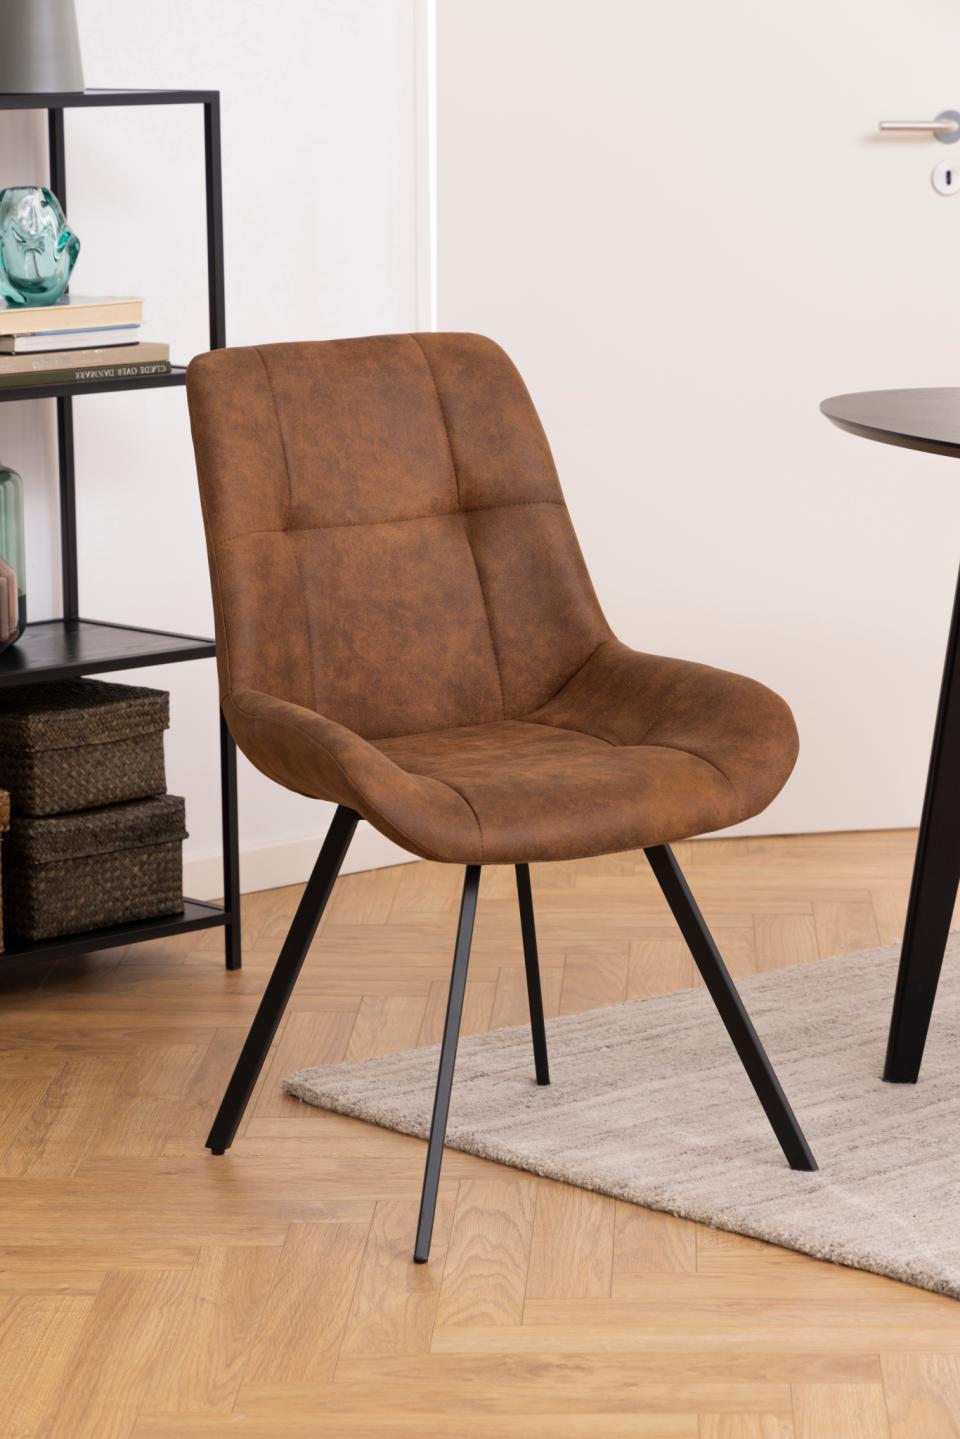 Krachtig uitlokken Voorlopige naam vintage bruine stoel kopen | aktiewonen.nl